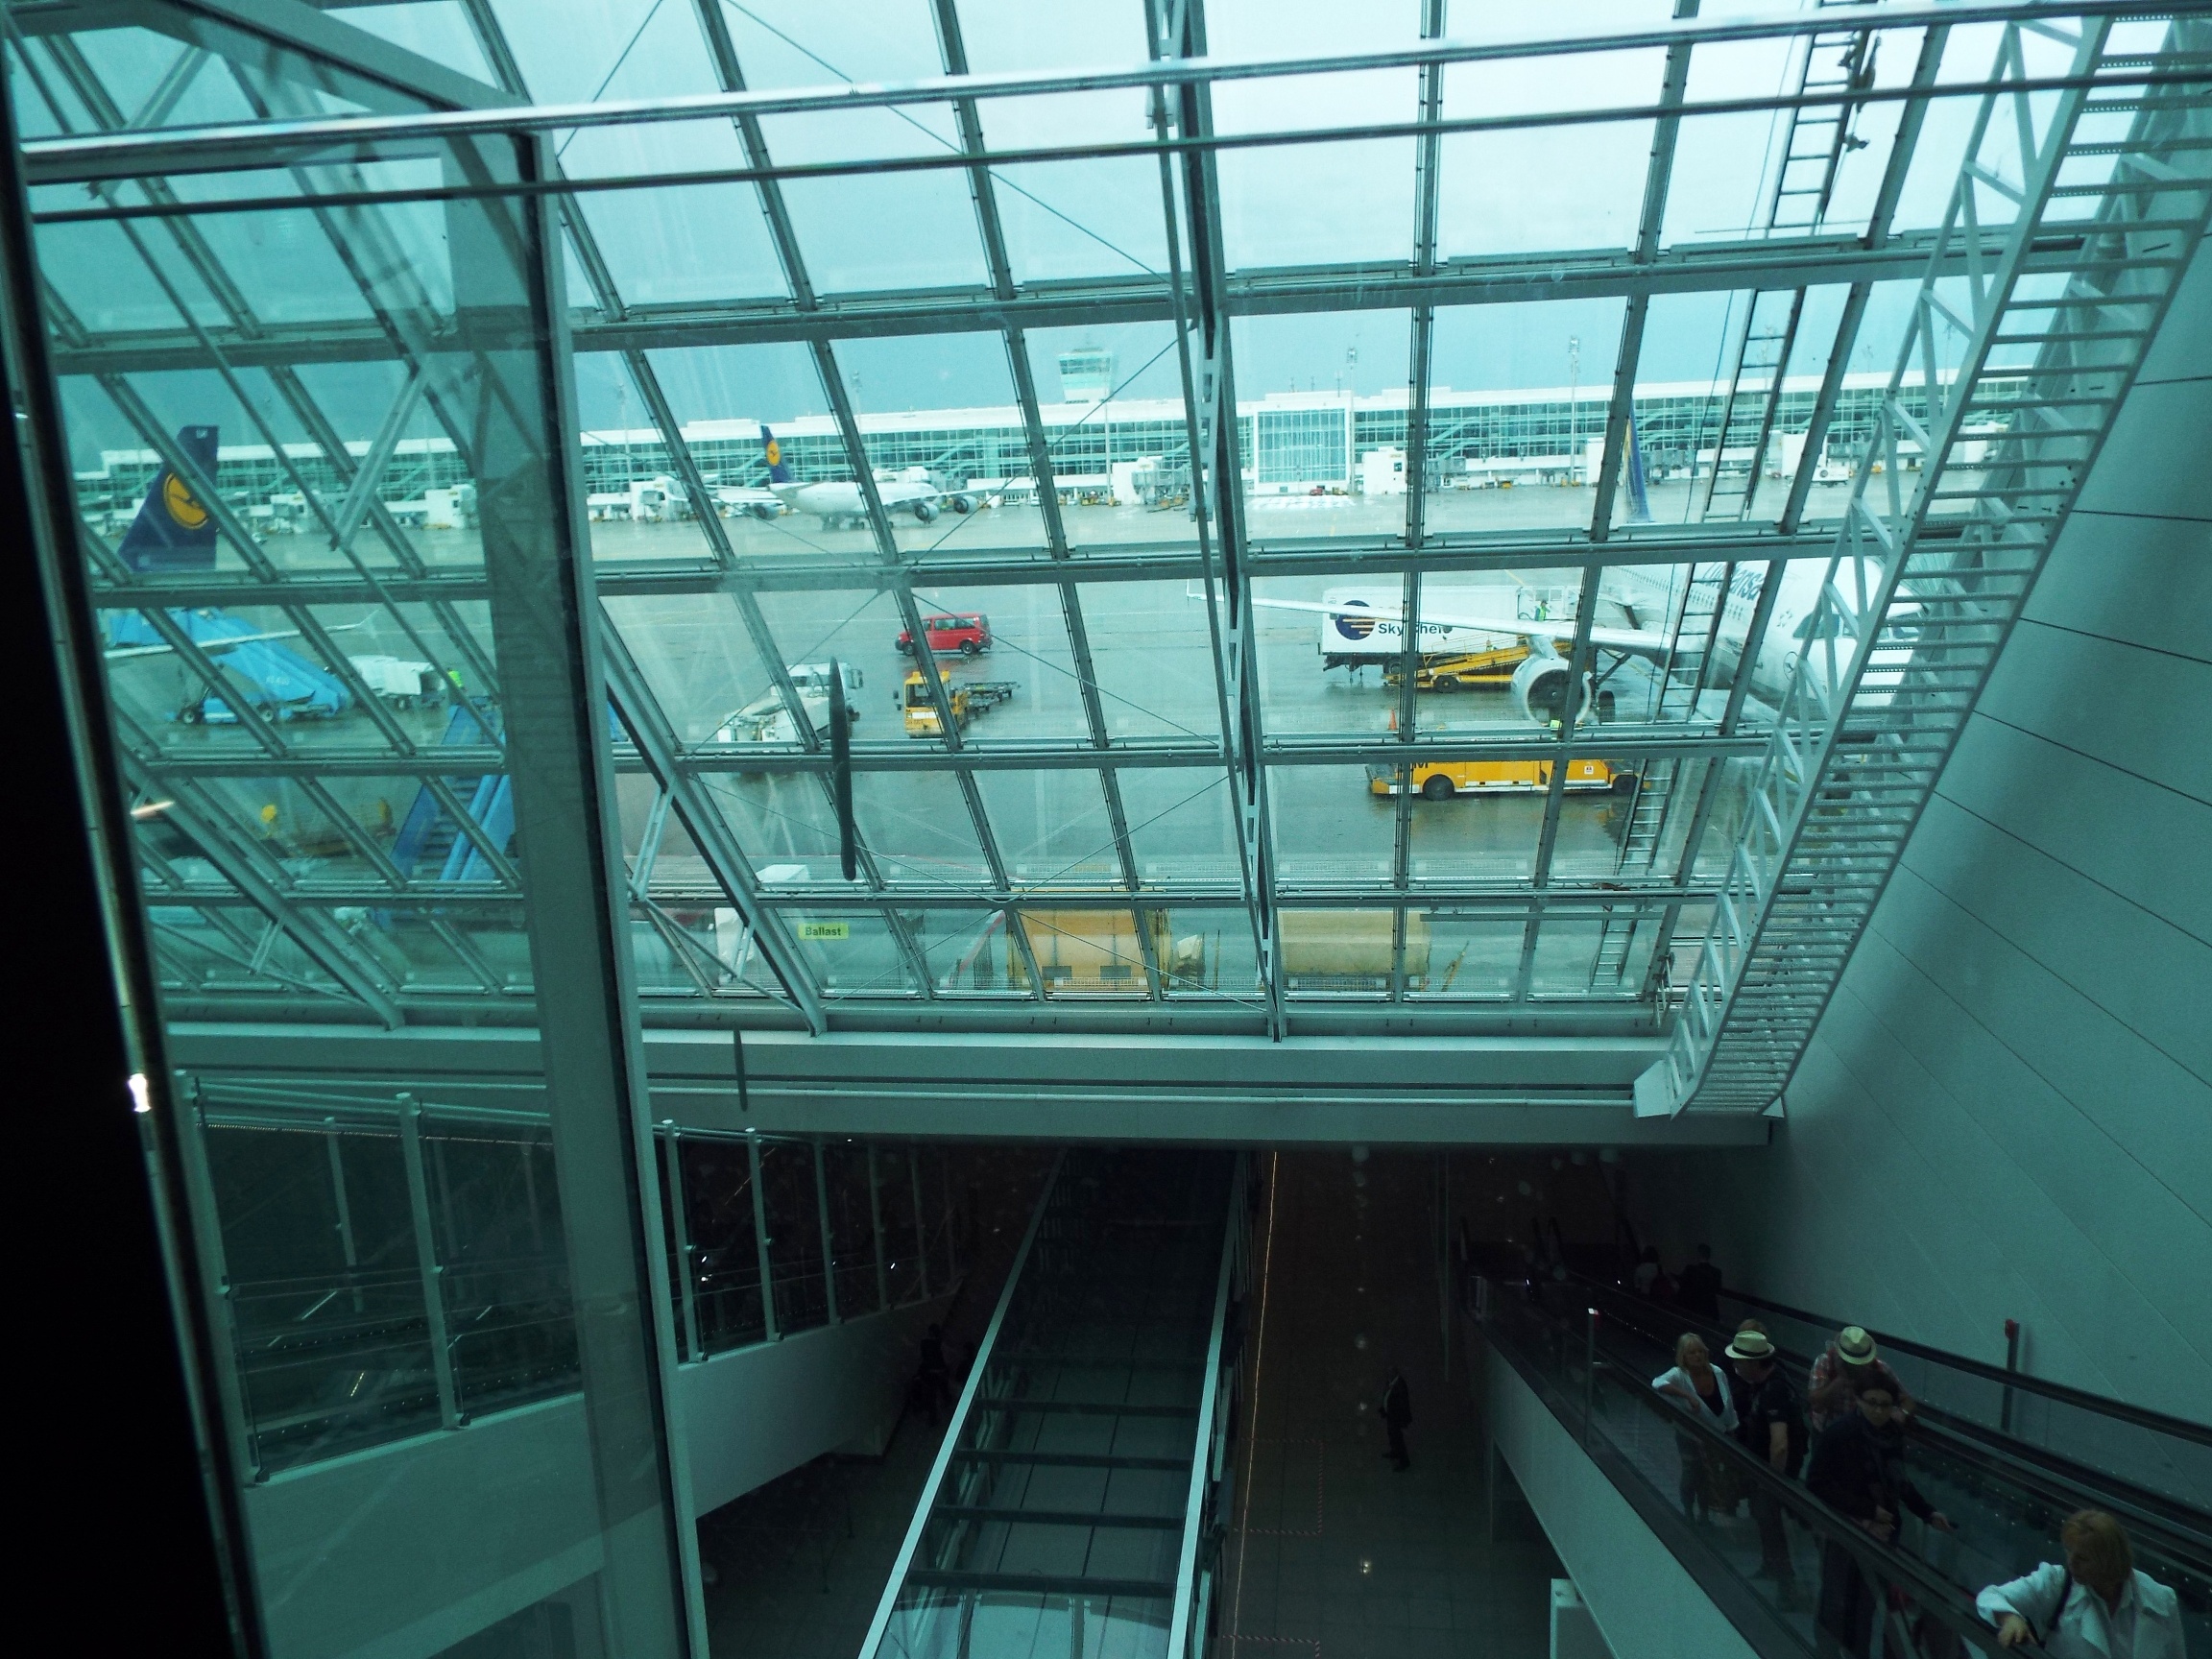 Lépcsőház: Fent repülőgépek, lent földalatti